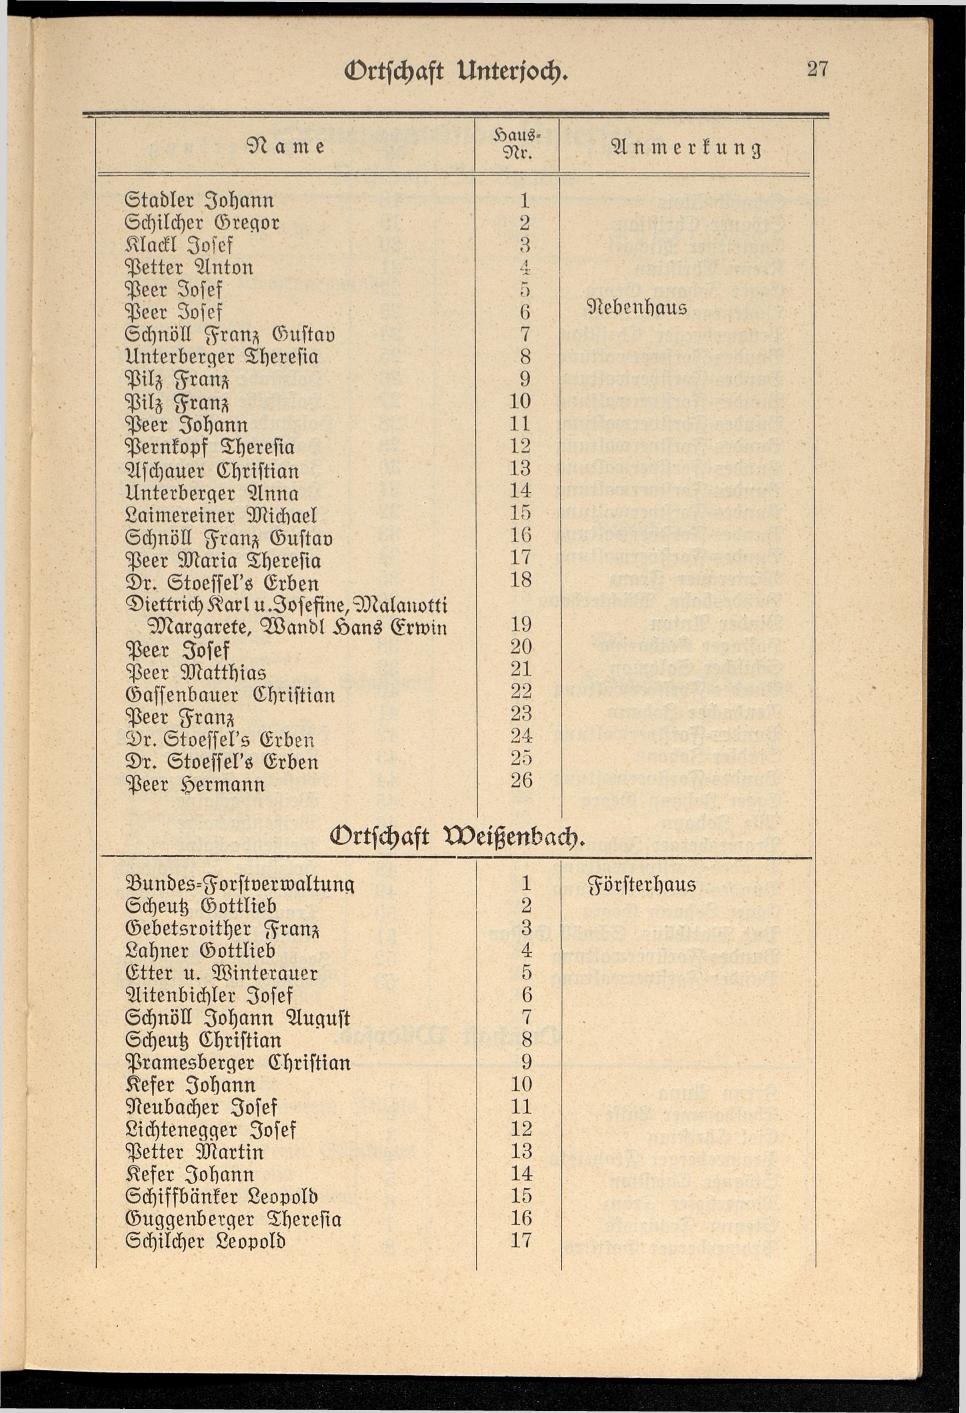 Häuser-Verzeichnis der Gemeinde Goisern nach dem Stande von Juli 1927 - Seite 34